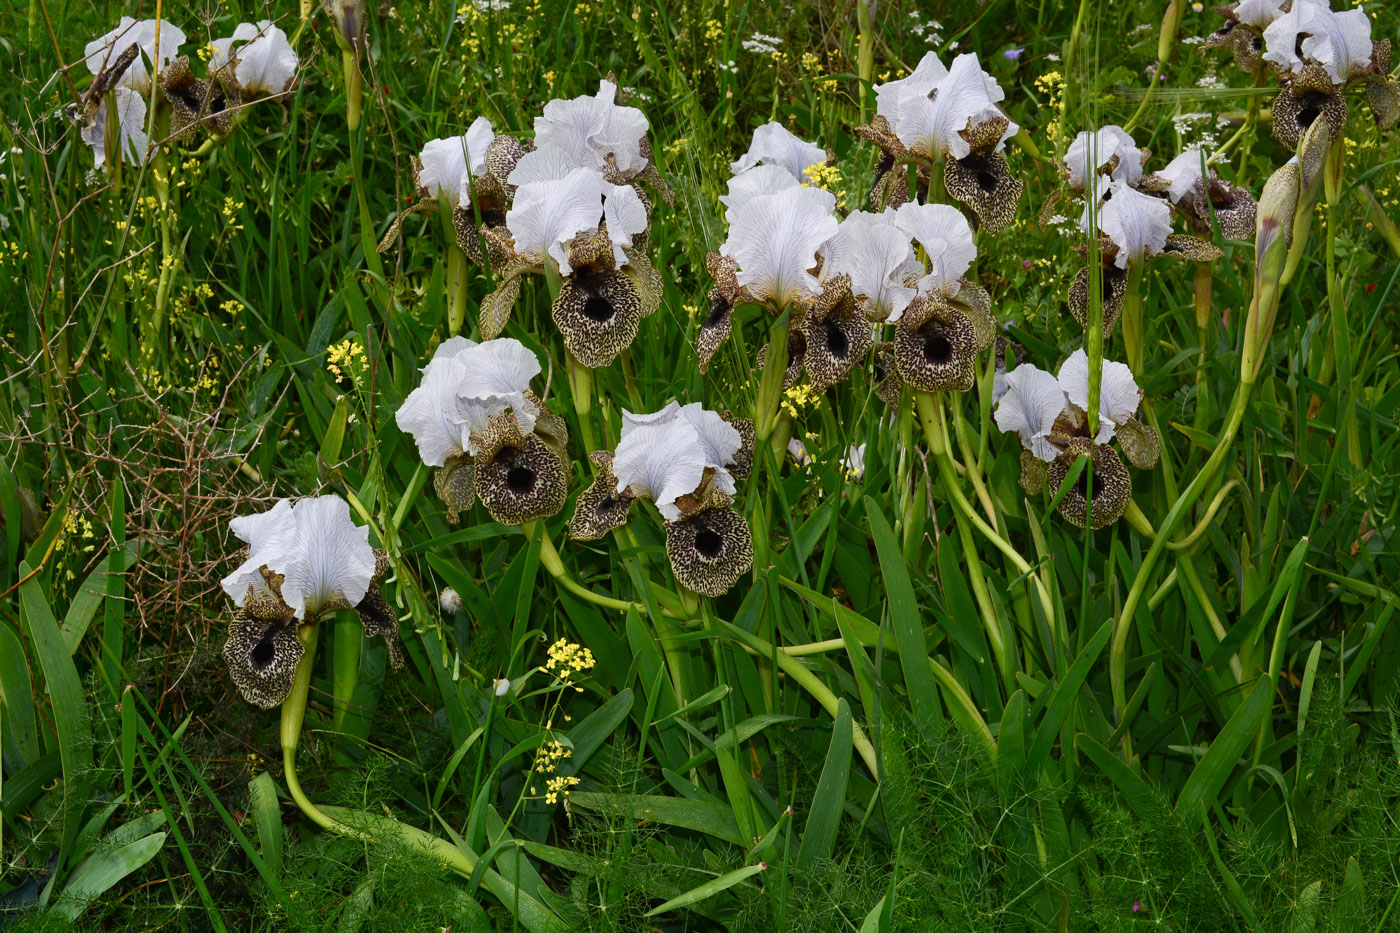 Image of Iris bismarckiana specimen.